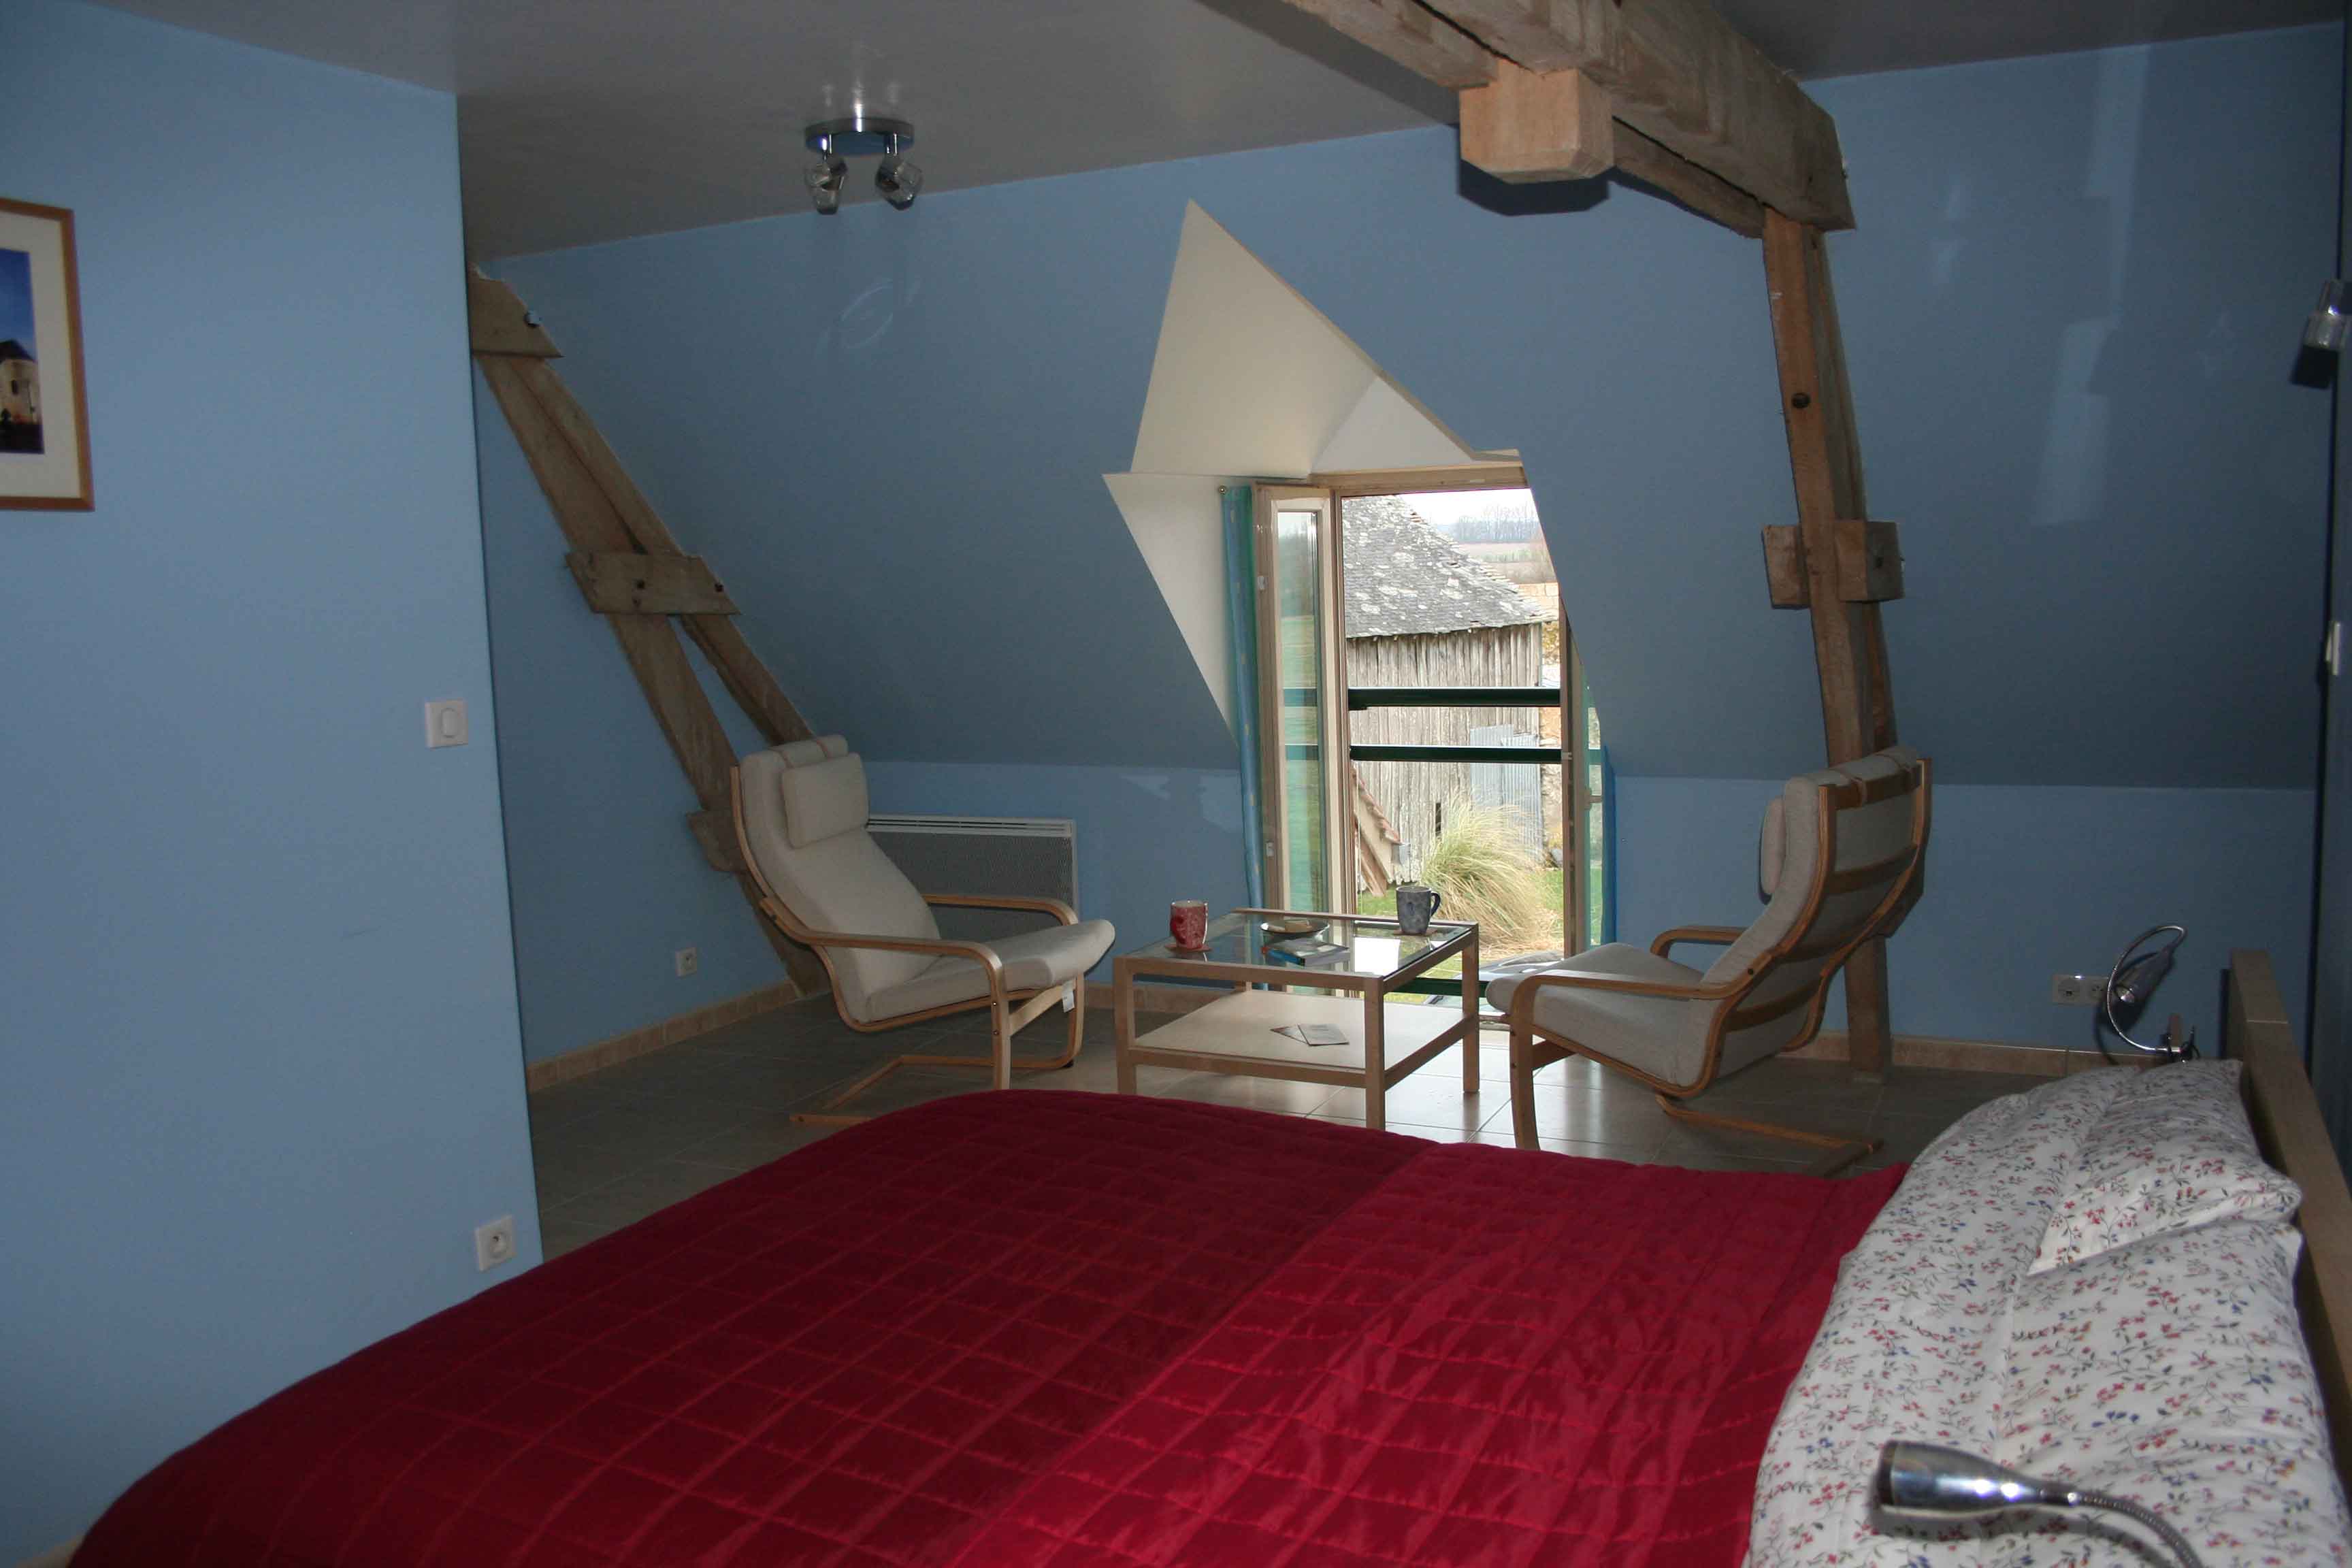 LVA - the bedroom 2